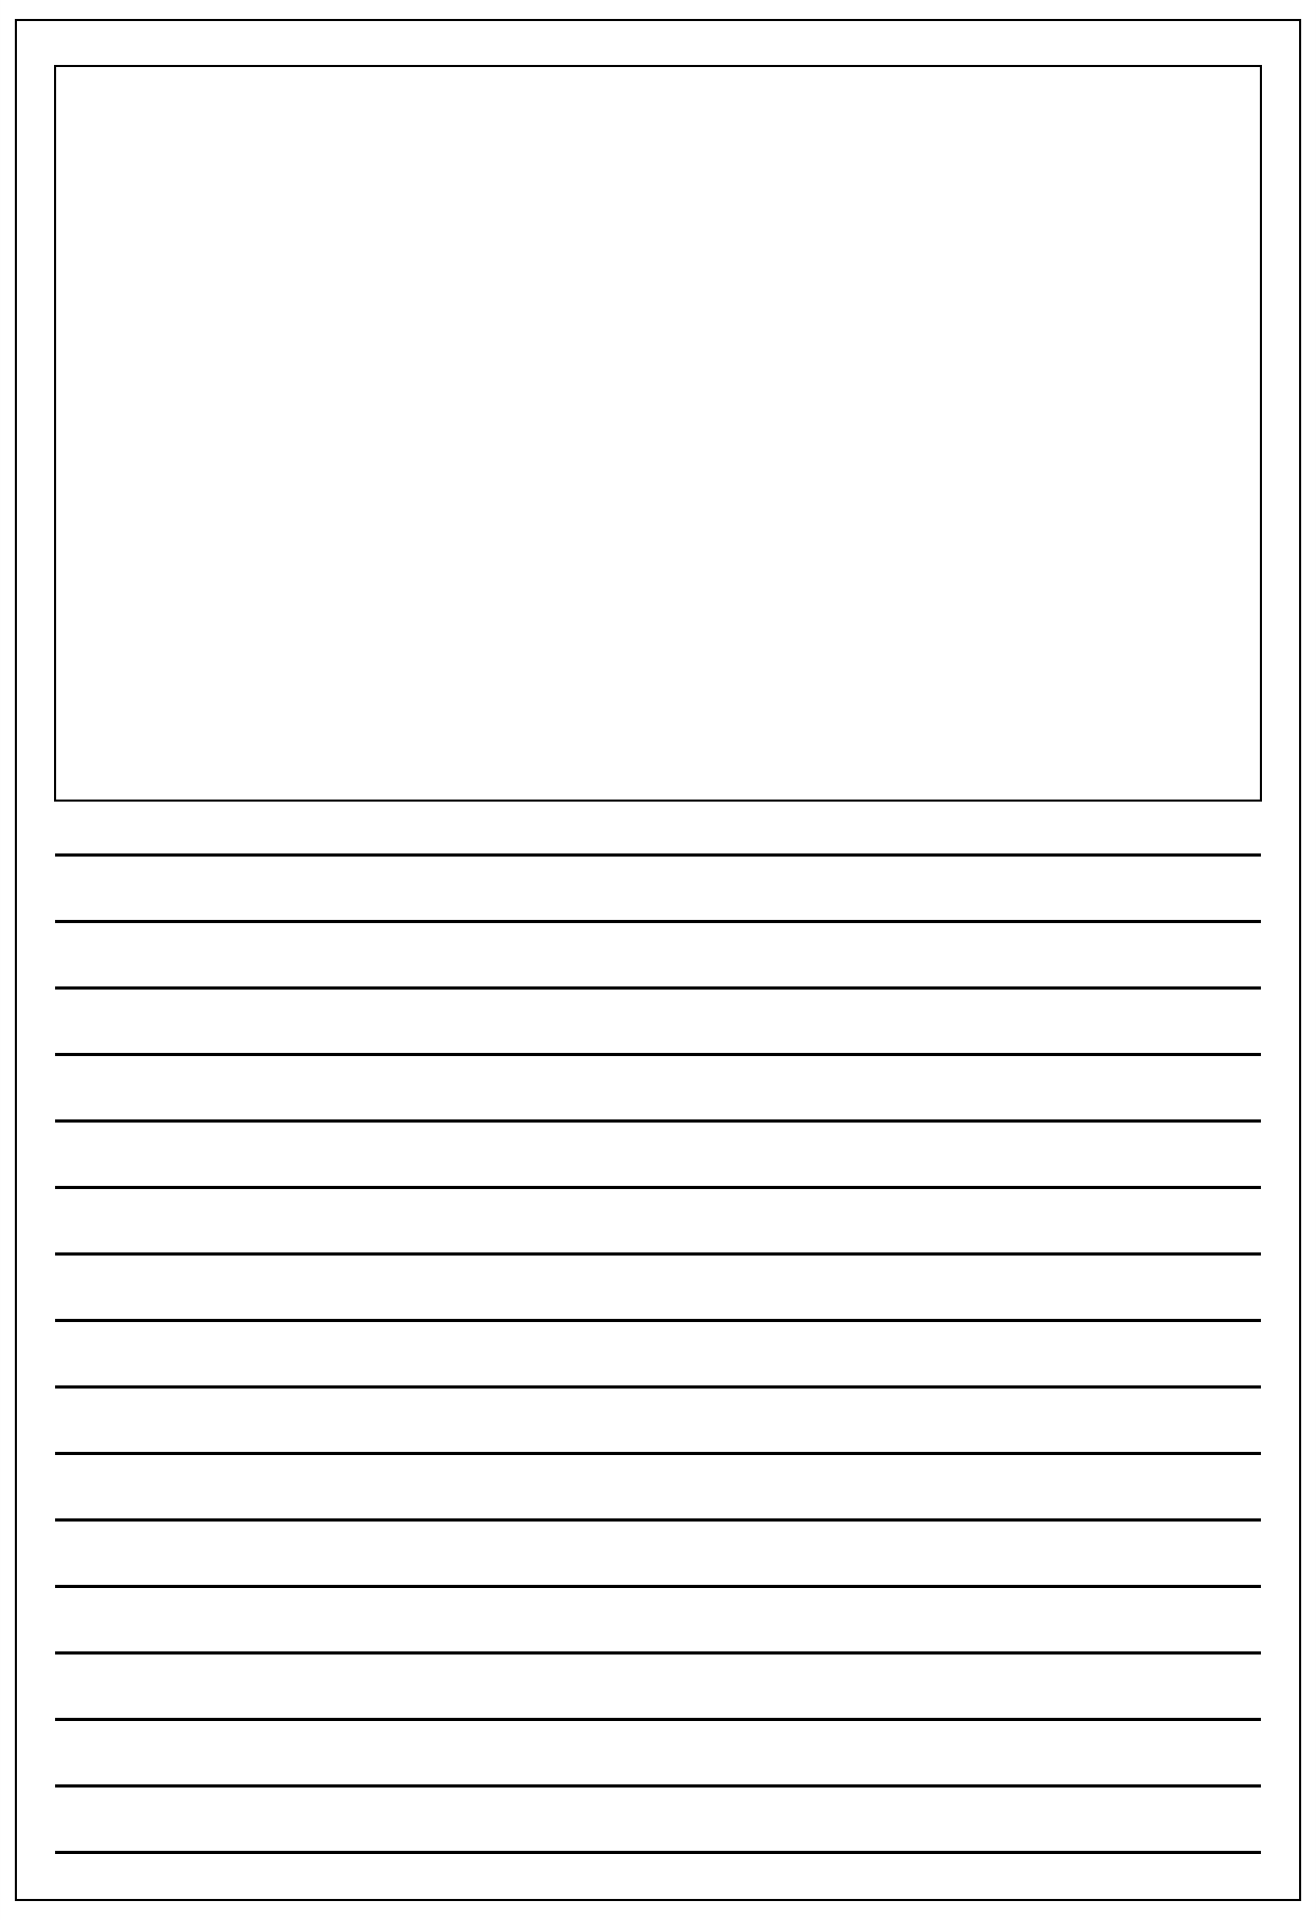 Blank Printable Writing Sheets | Writing Worksheets